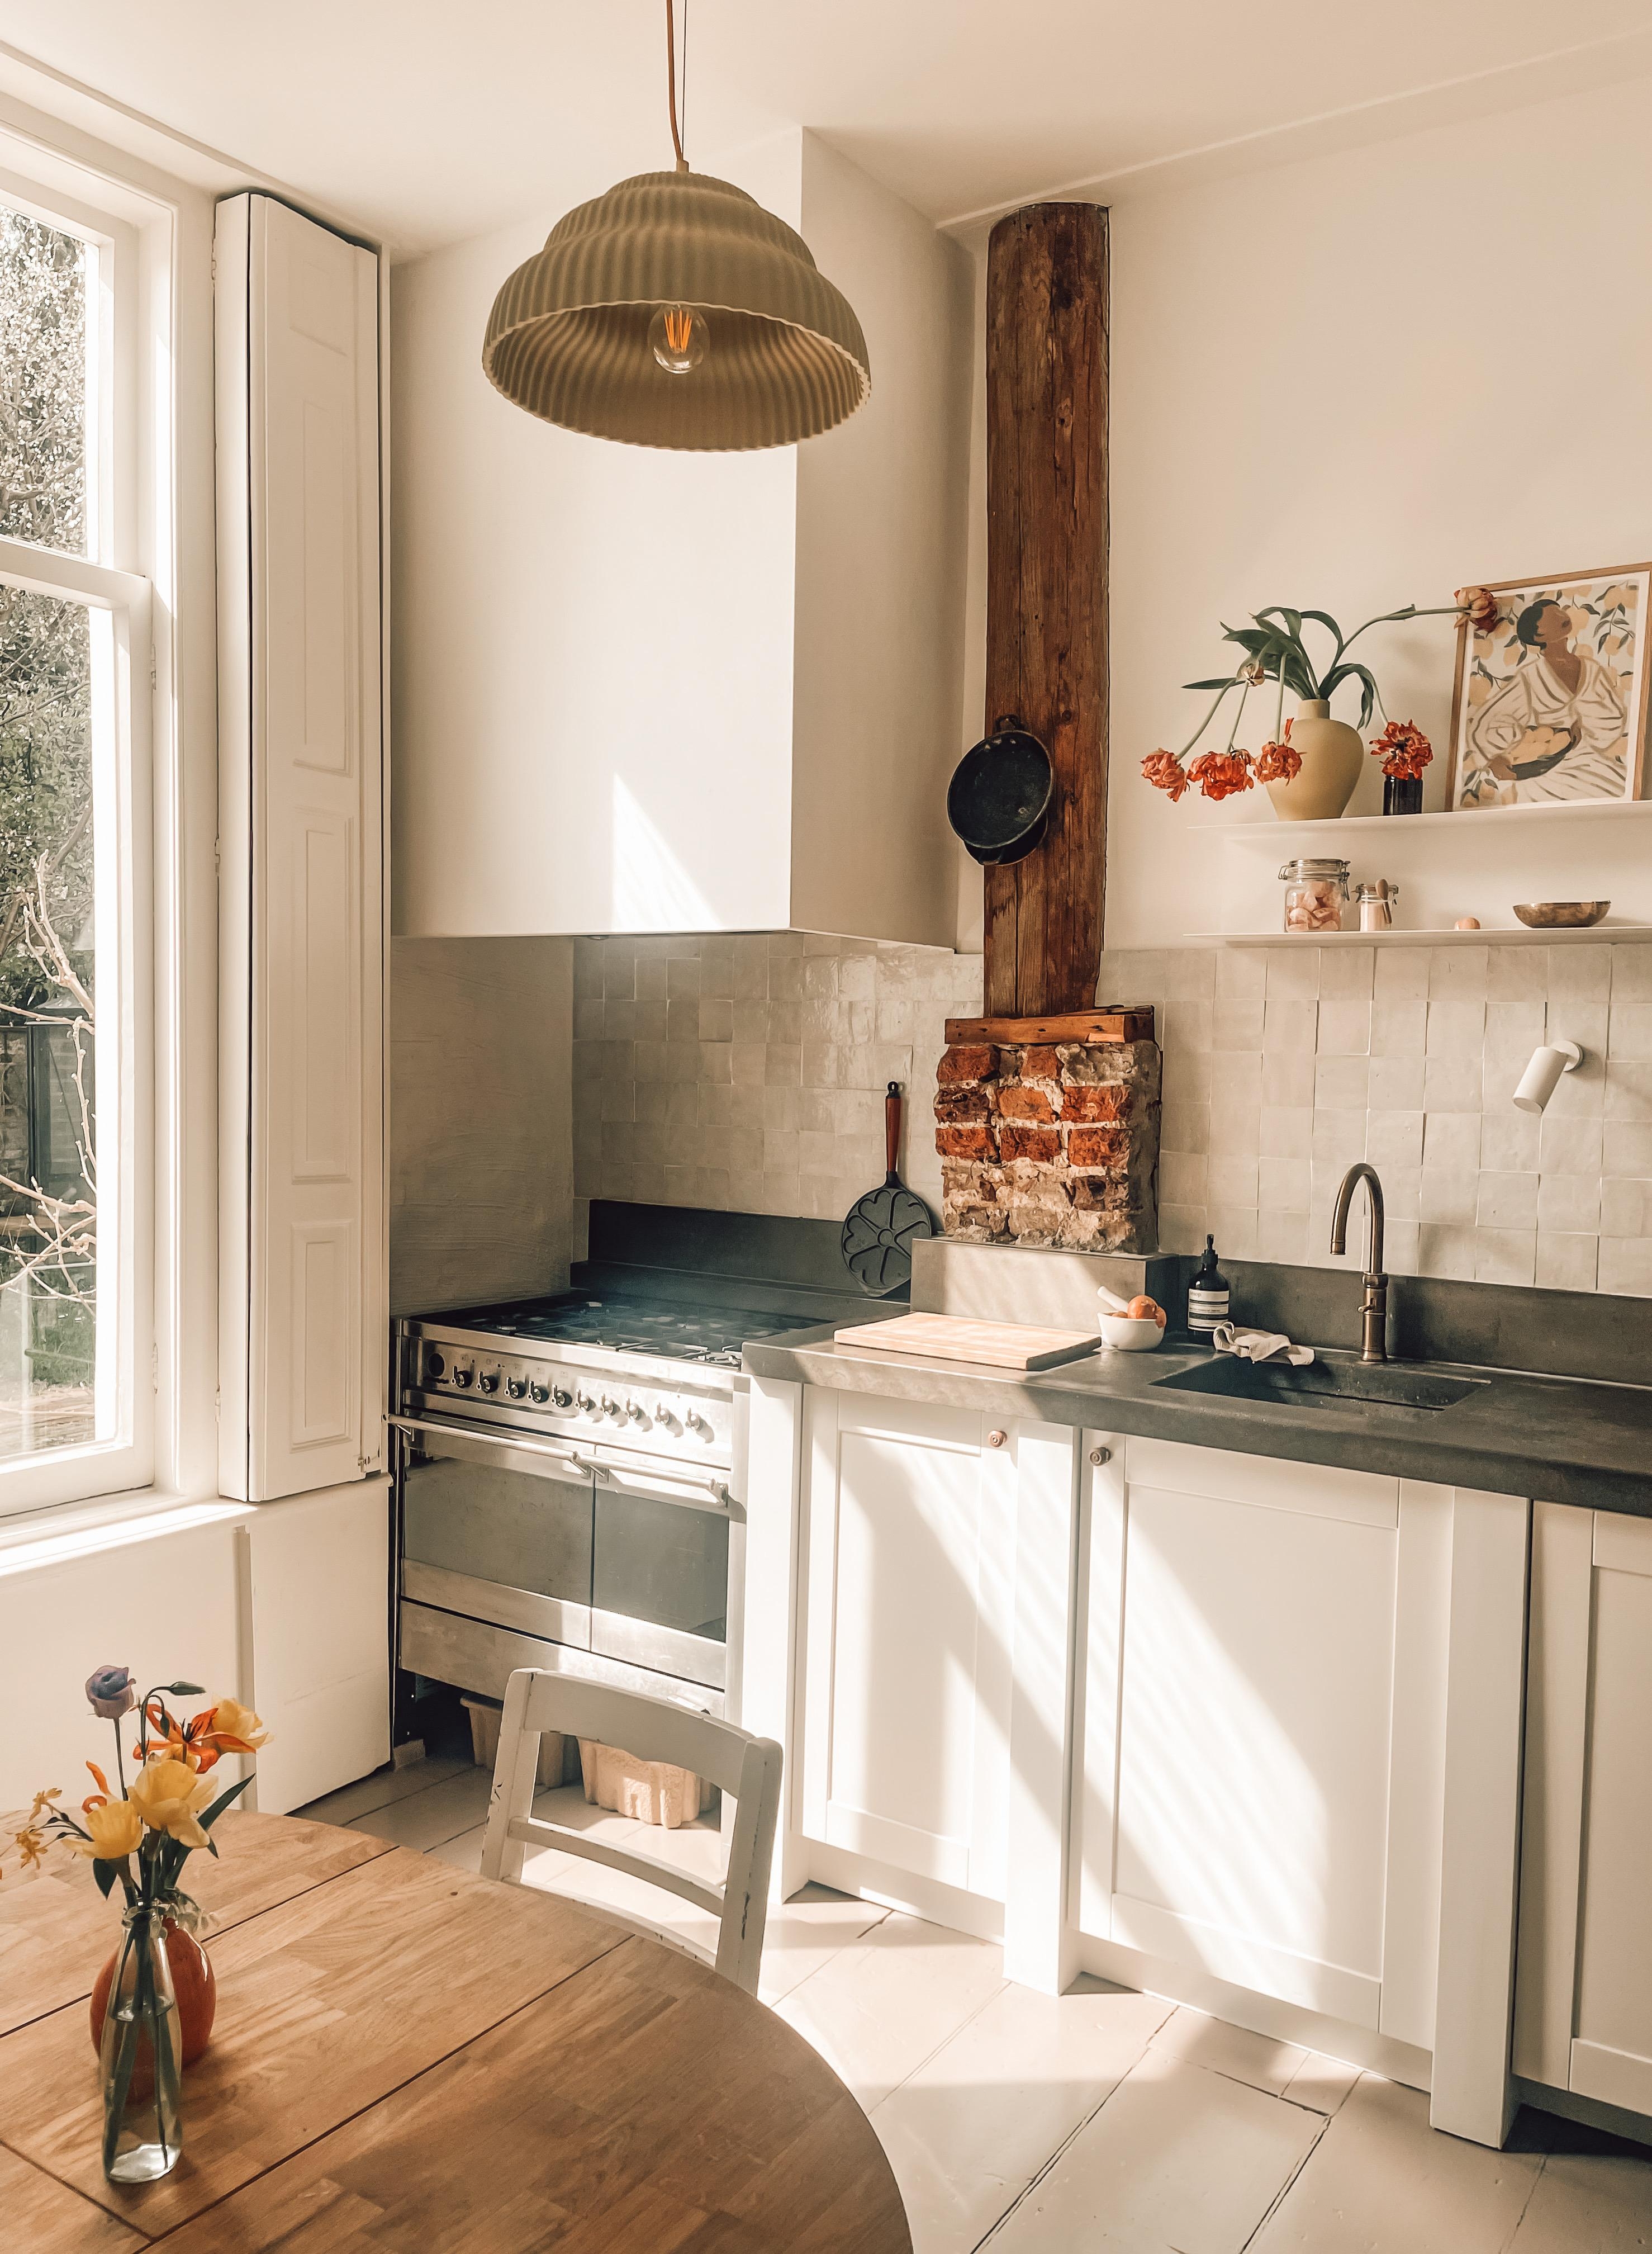 liebe es wenn die Sonne in unsere Küche scheint. 
#vintageküche#vintageinterior#kücheninspo#Küchenideen#kitchenstories